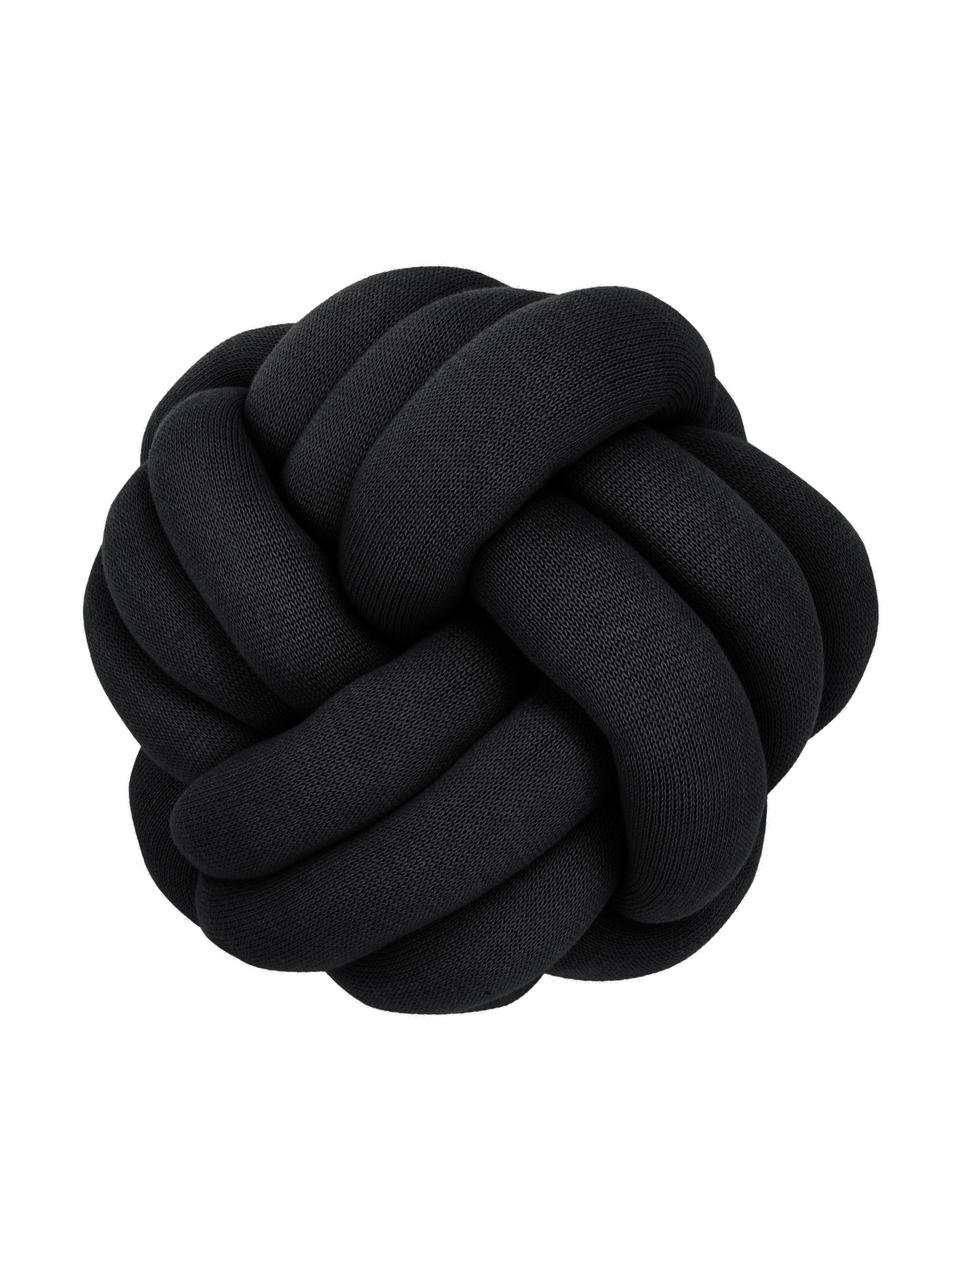 Coussin nœud Twist, Noir, Ø 30 cm